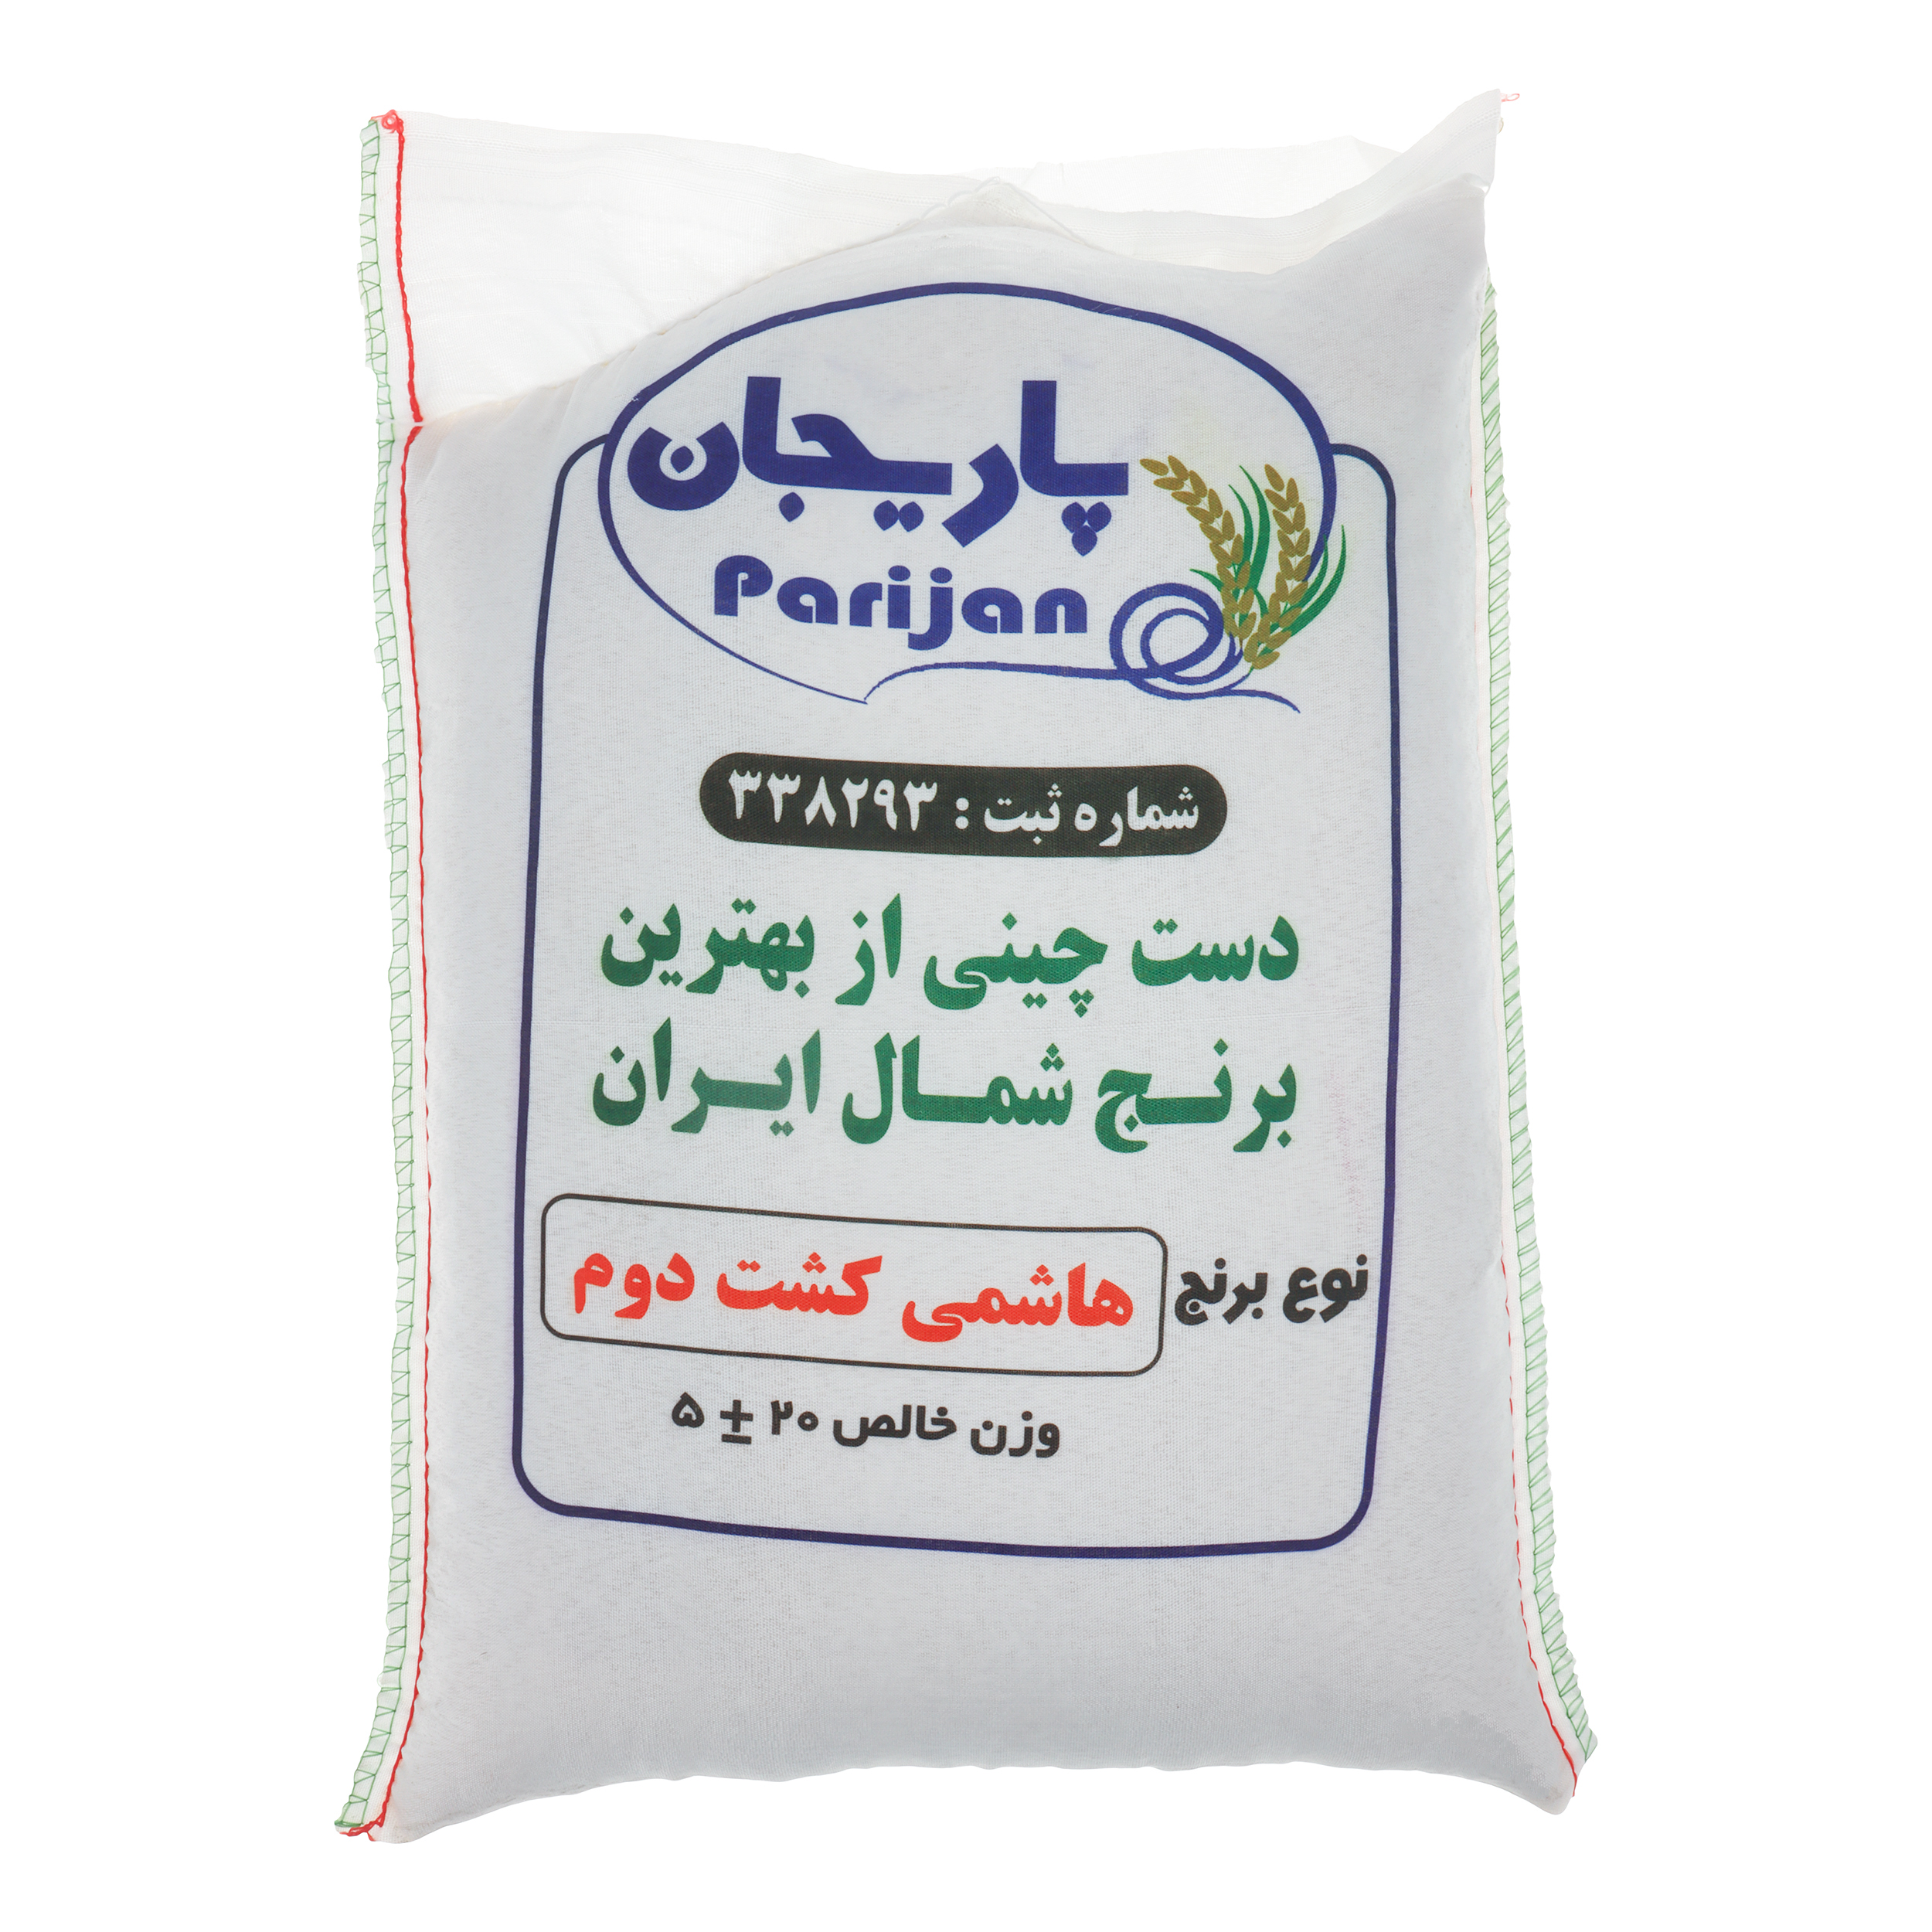 نکته خرید - قیمت روز برنج درجه یک کشت دوم هاشمی پاریجان - 5 کیلوگرم خرید